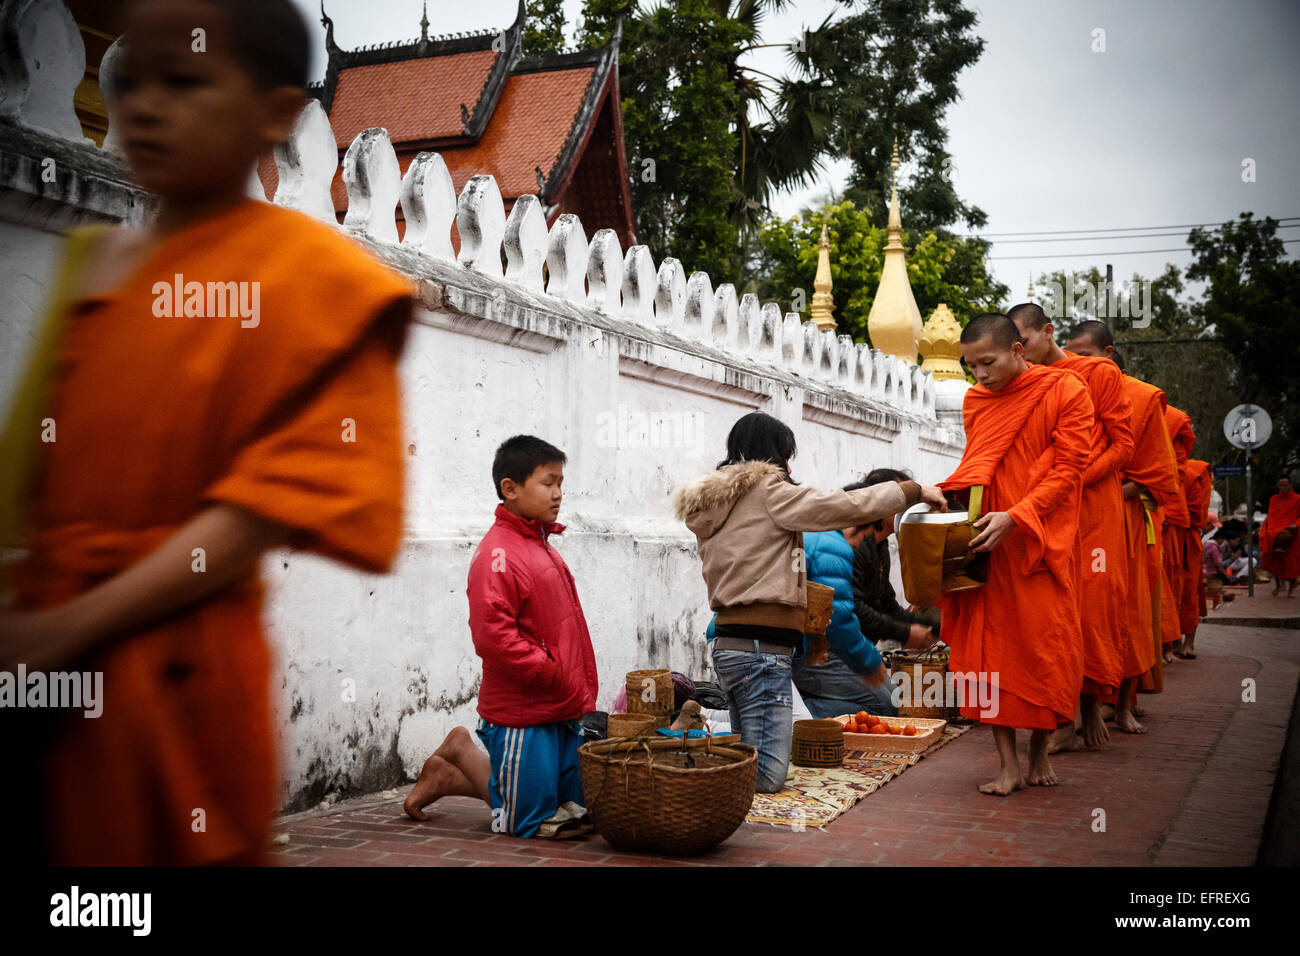 La collecte de l'aumône des moines au lever du soleil, Luang Prabang, Laos. Banque D'Images